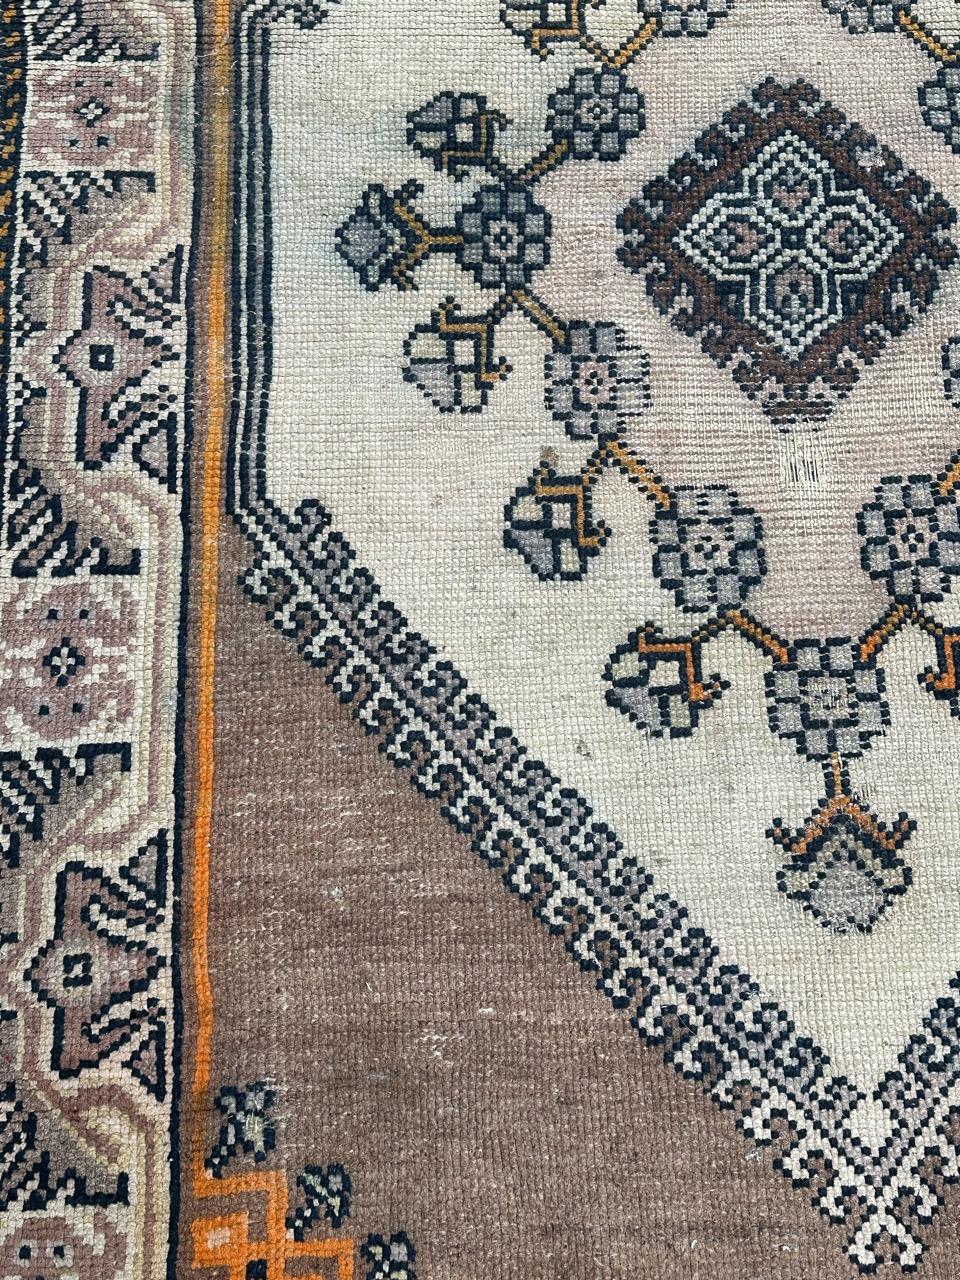 Joli tapis tunisien du milieu du siècle avec un design géométrique et tribal et de belles couleurs avec du blanc, orange, rose, violet, marron et noir, entièrement noué à la main avec de la laine sur une base de coton. 

✨✨✨
